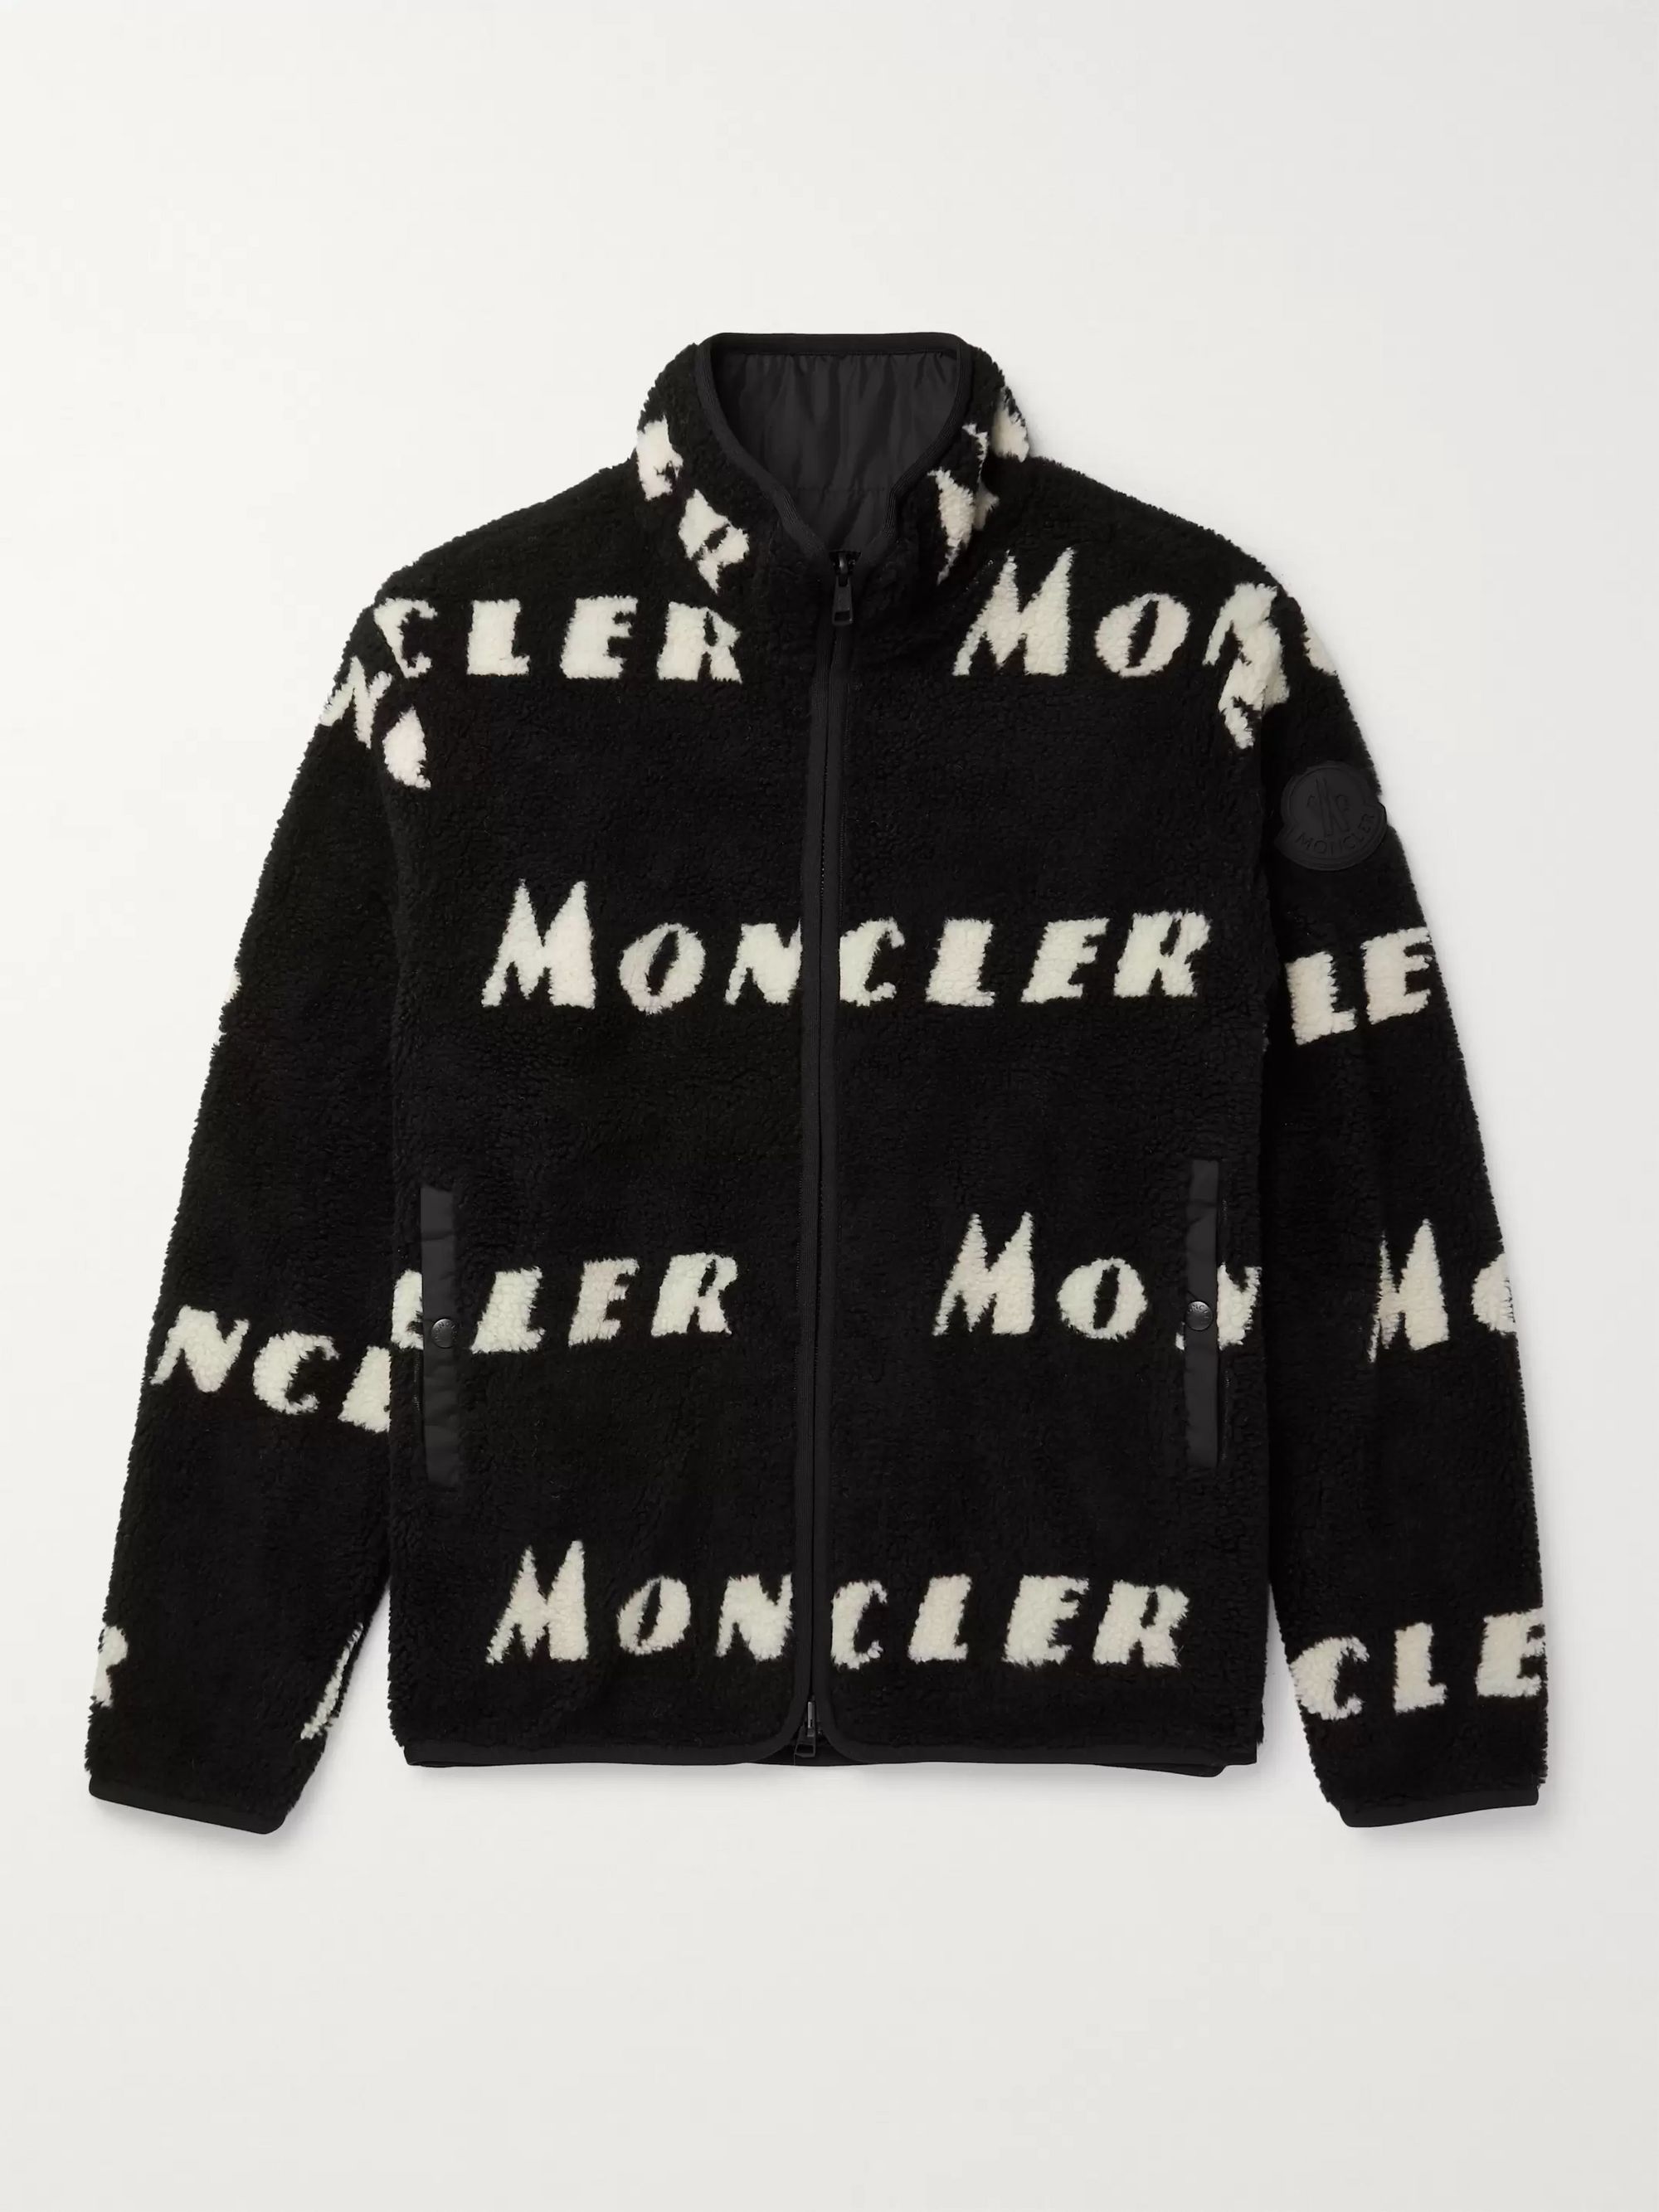 moncler jacket mr porter